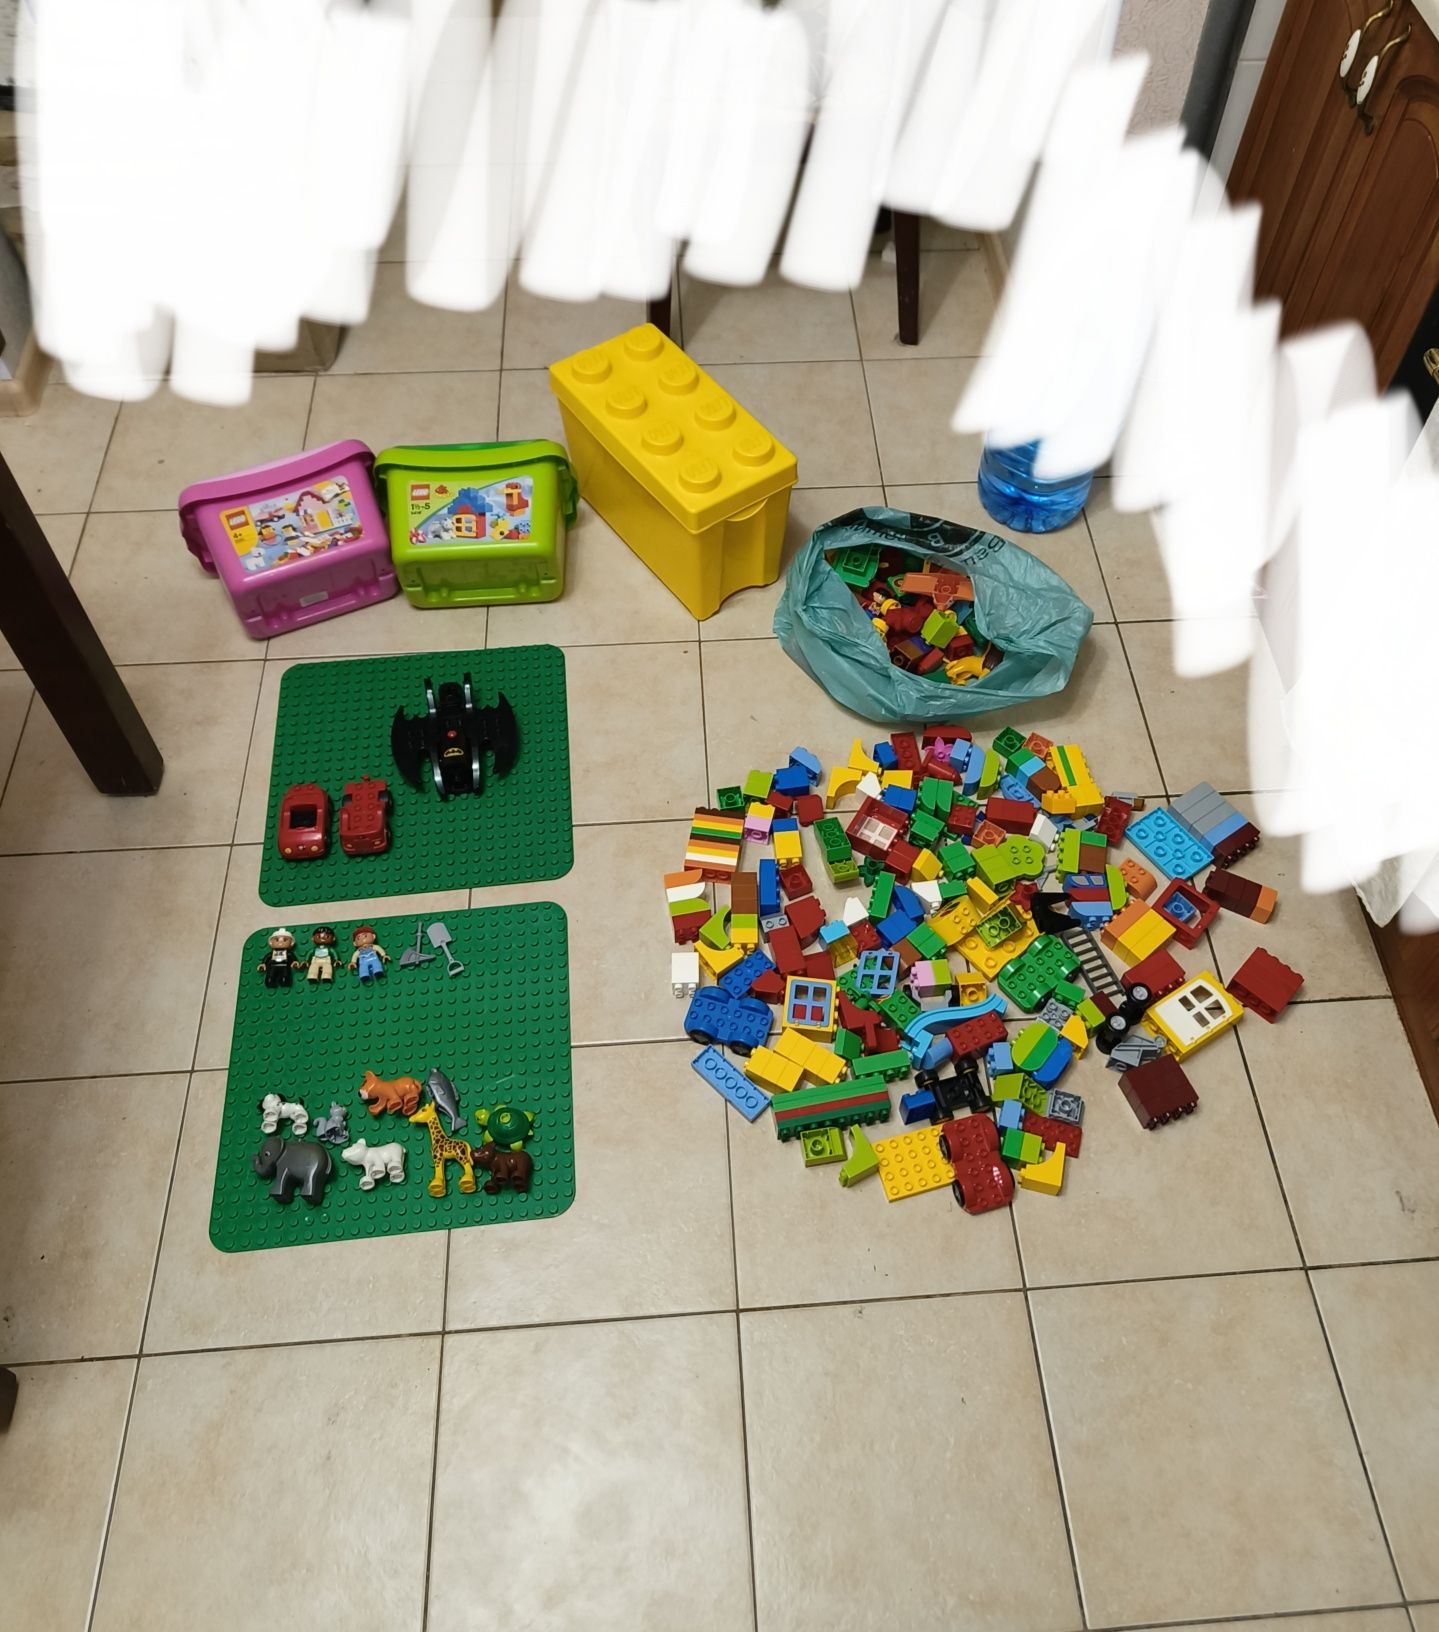 Sale! Lego Duplo на Вес (оригинал) Фигурки, Животные, Транспорты